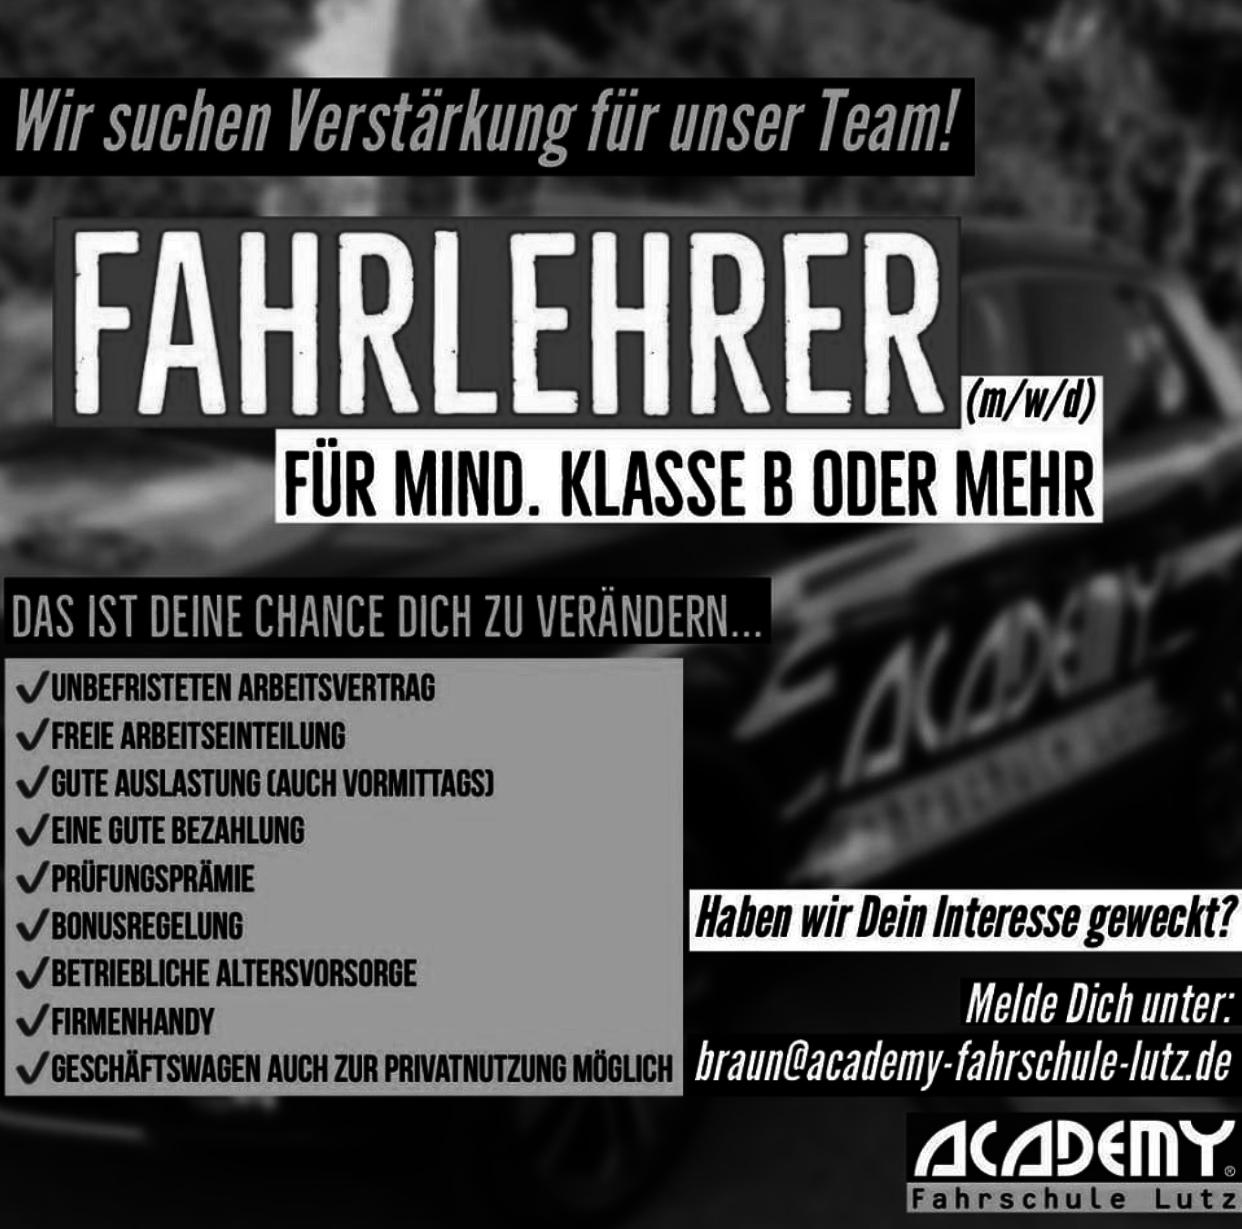 ACADEMY Fahrschule - de.academy.fahrschulen.model.instructor.Instructor@af0c